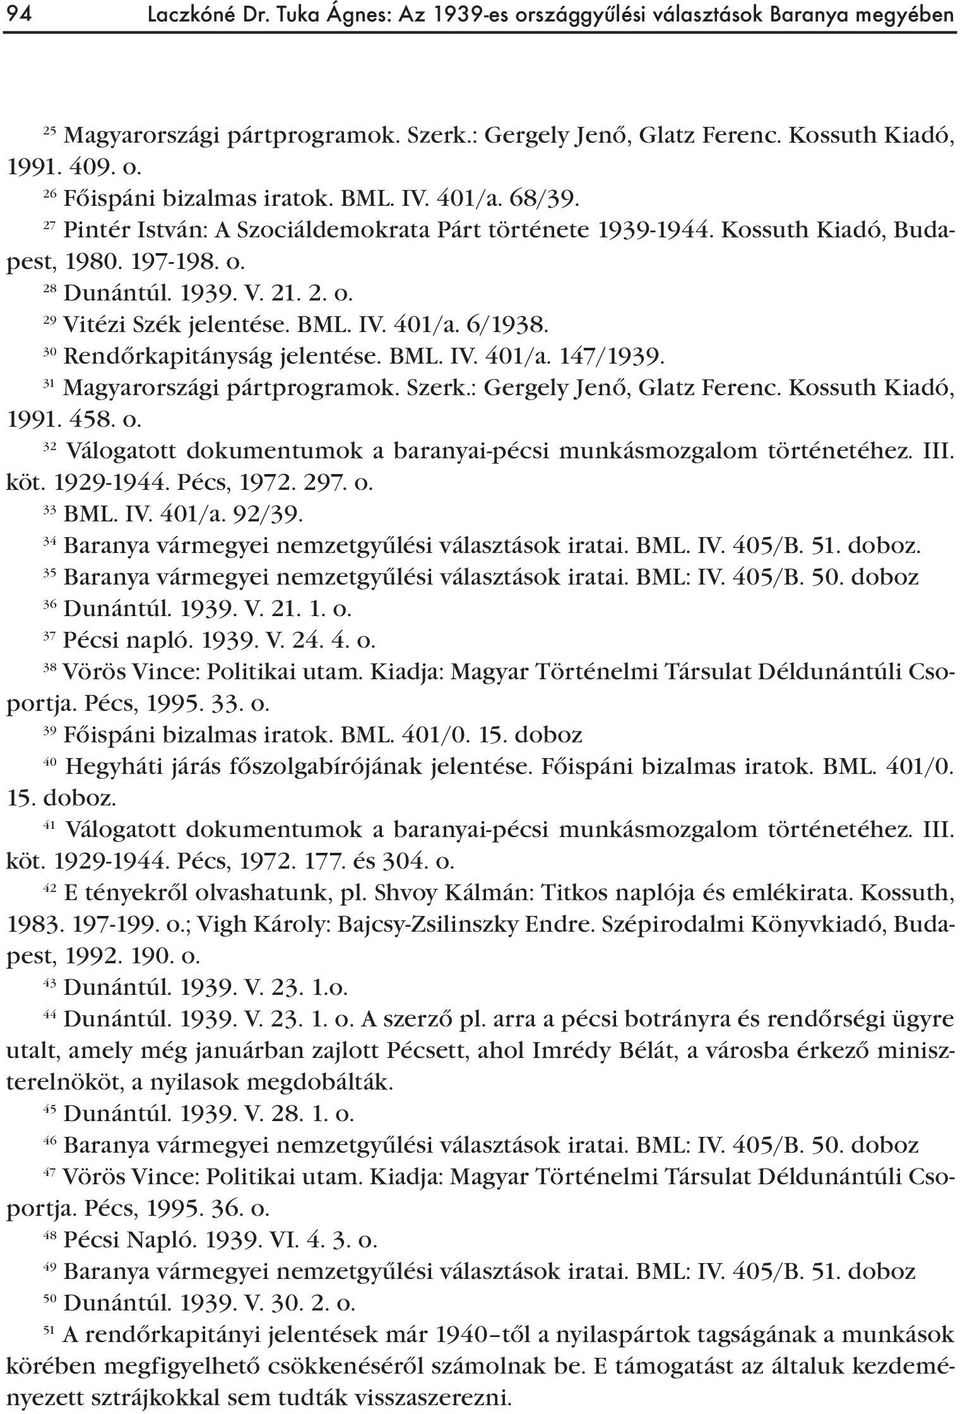 30 Rendőrkapitányság jelentése. BML. IV. 401/a. 147/1939. 31 Magyarországi pártprogramok. Szerk.: Gergely Jenő, Glatz Ferenc. Kossuth Kiadó, 1991. 458. o.